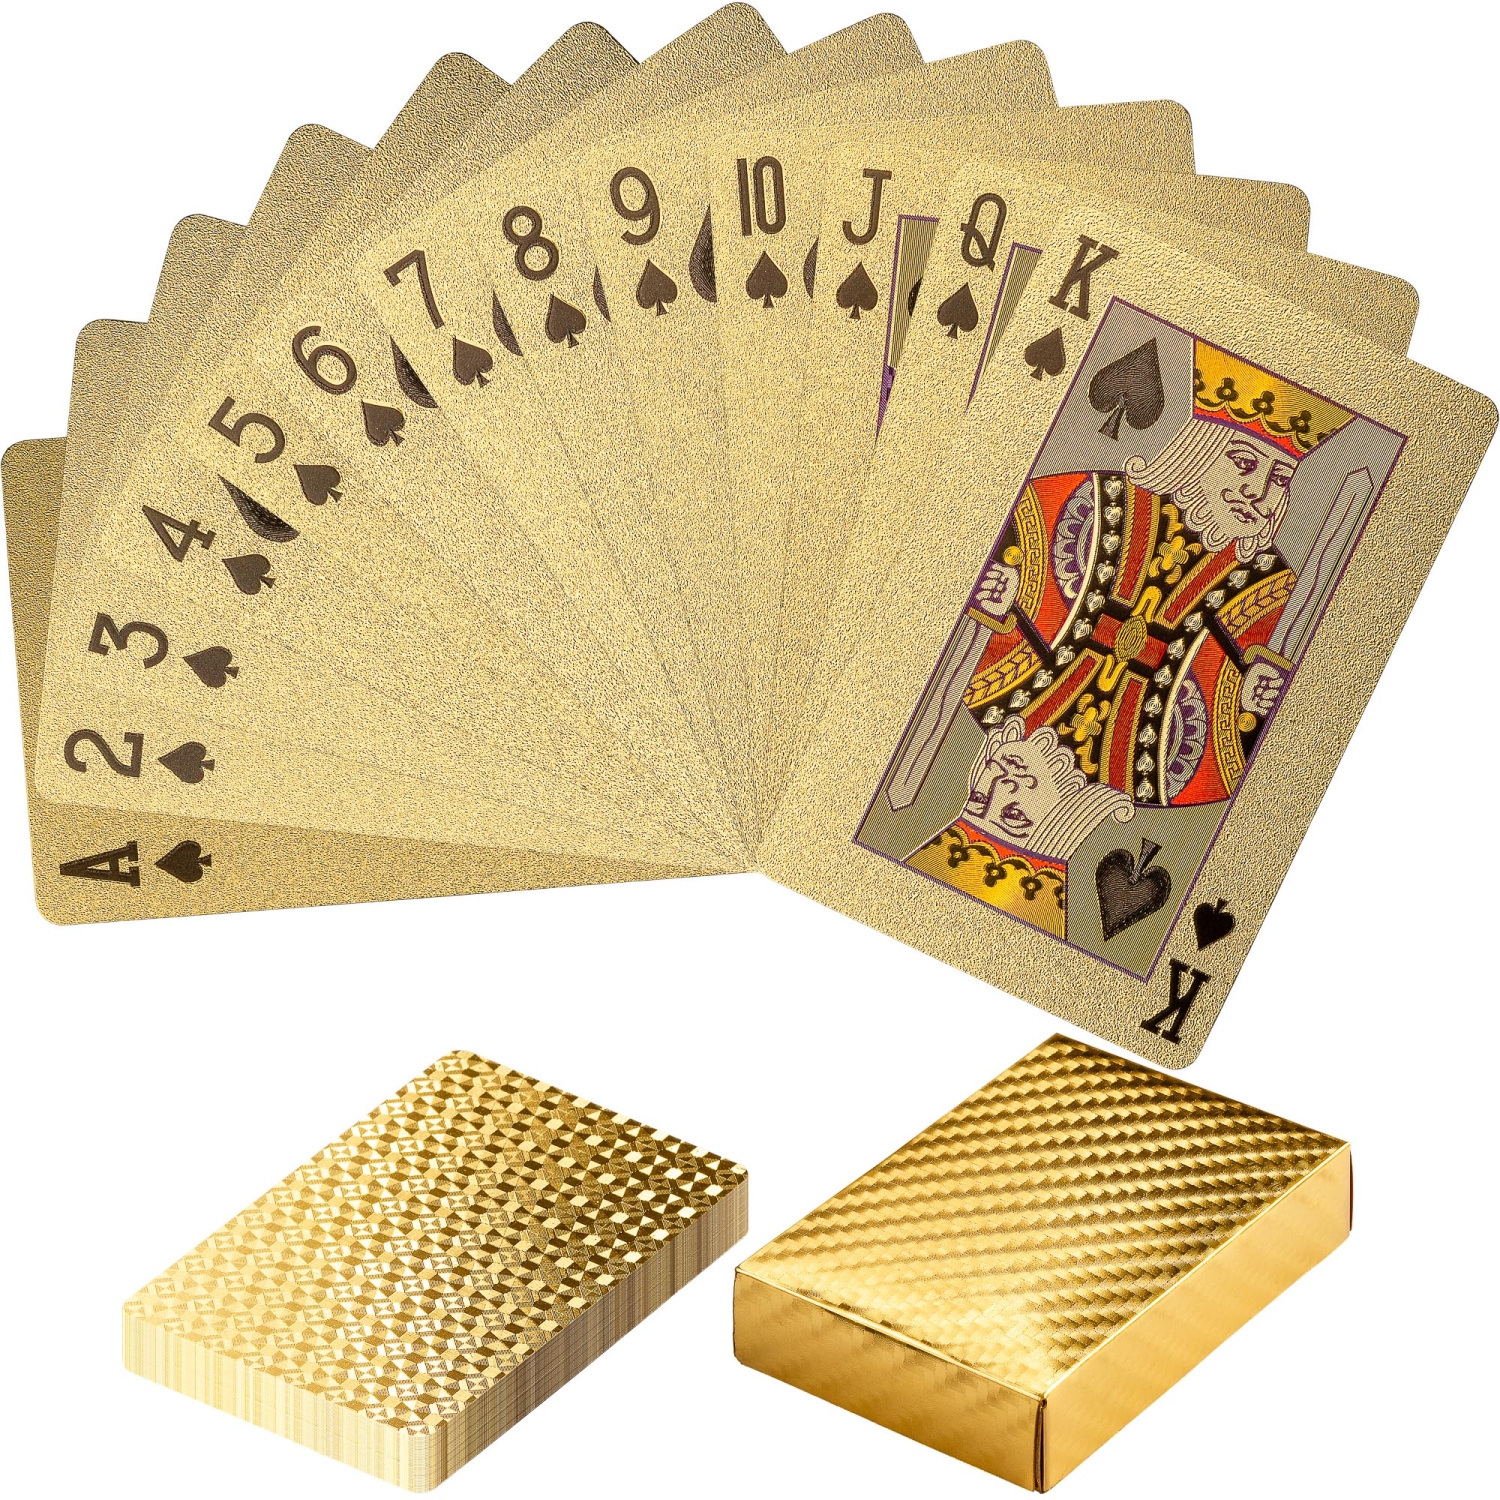 Pokerkarten Deck